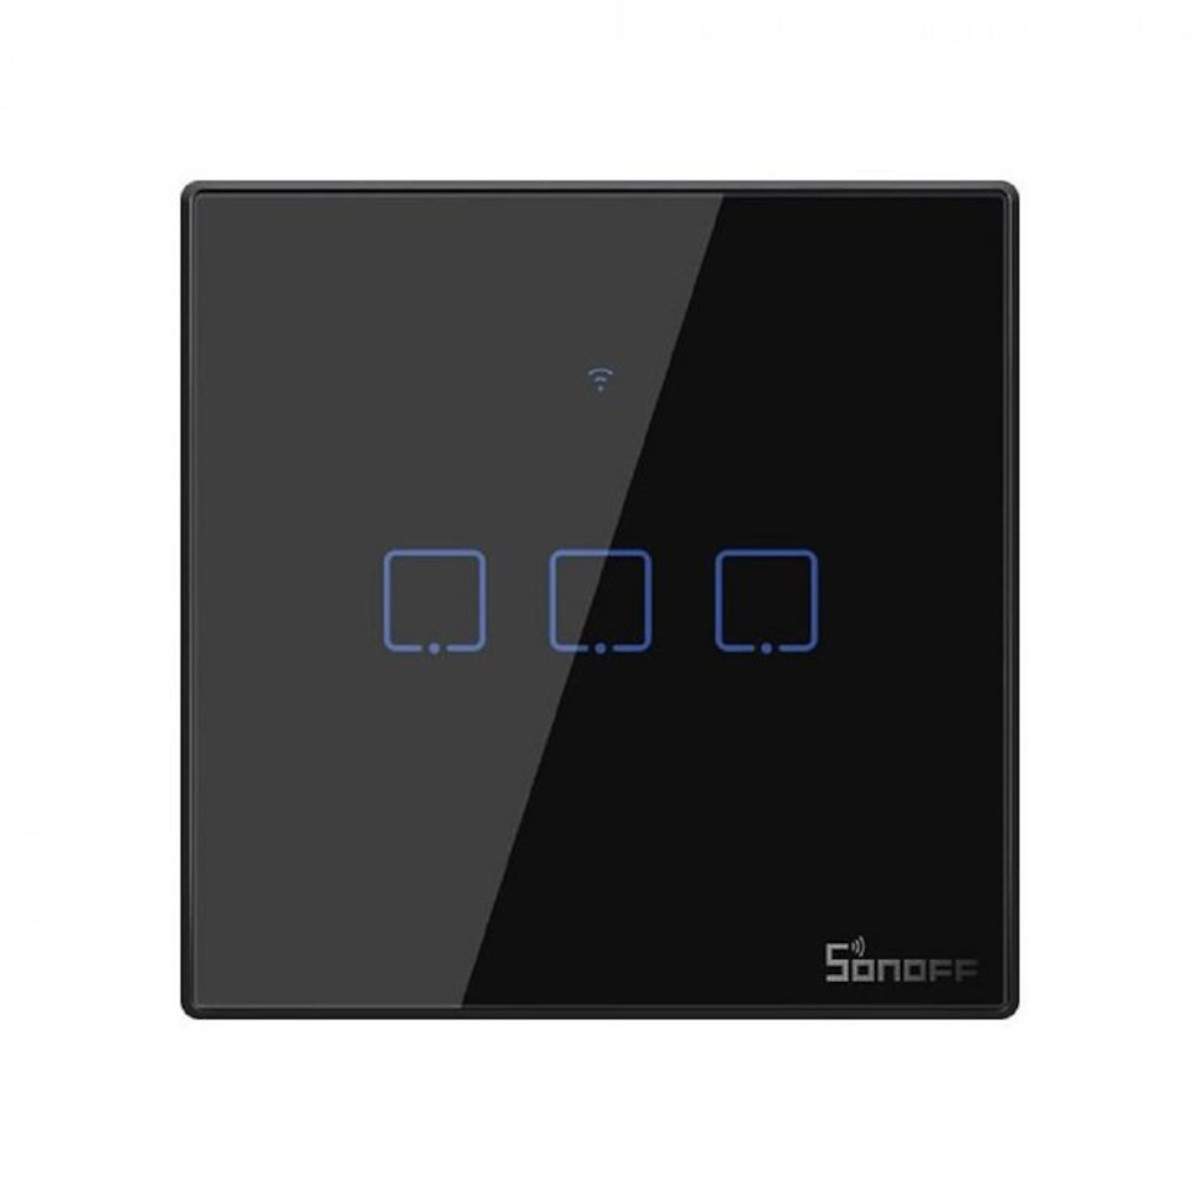 SONOFF WiFi Smart Wandschalter - 3 Taster - schwarz, Frontansicht, vor weißem Hintergrund